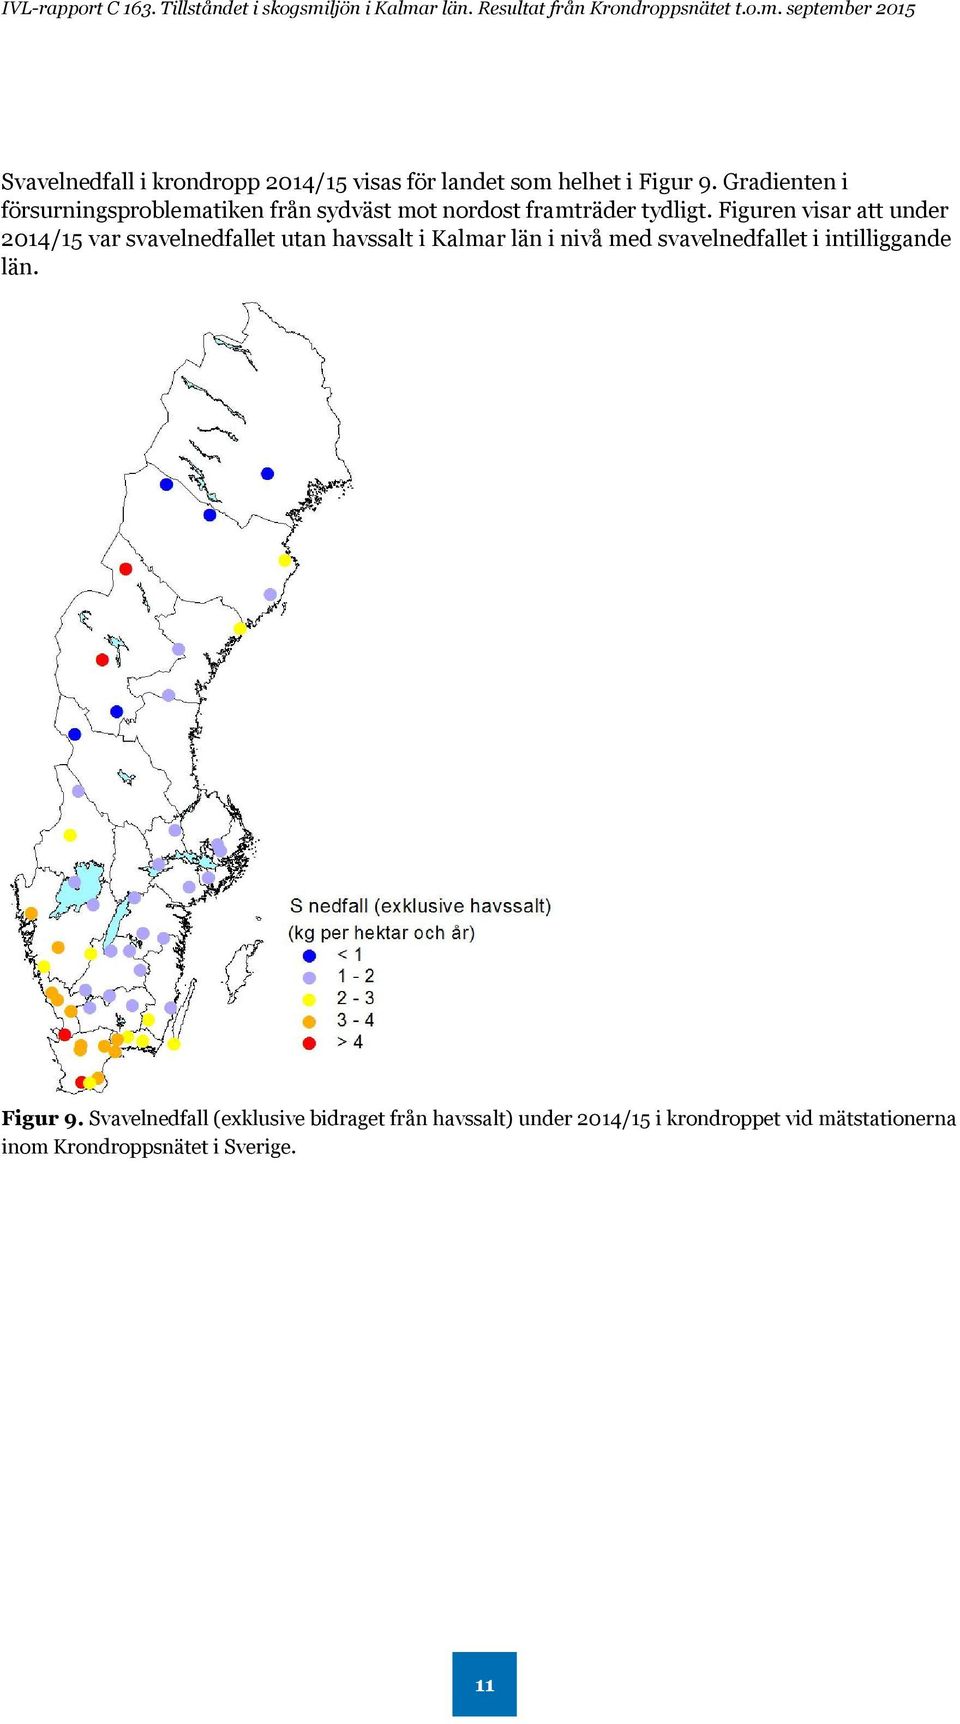 Figuren visar att under 2014/15 var svavelnedfallet utan havssalt i Kalmar län i nivå med svavelnedfallet